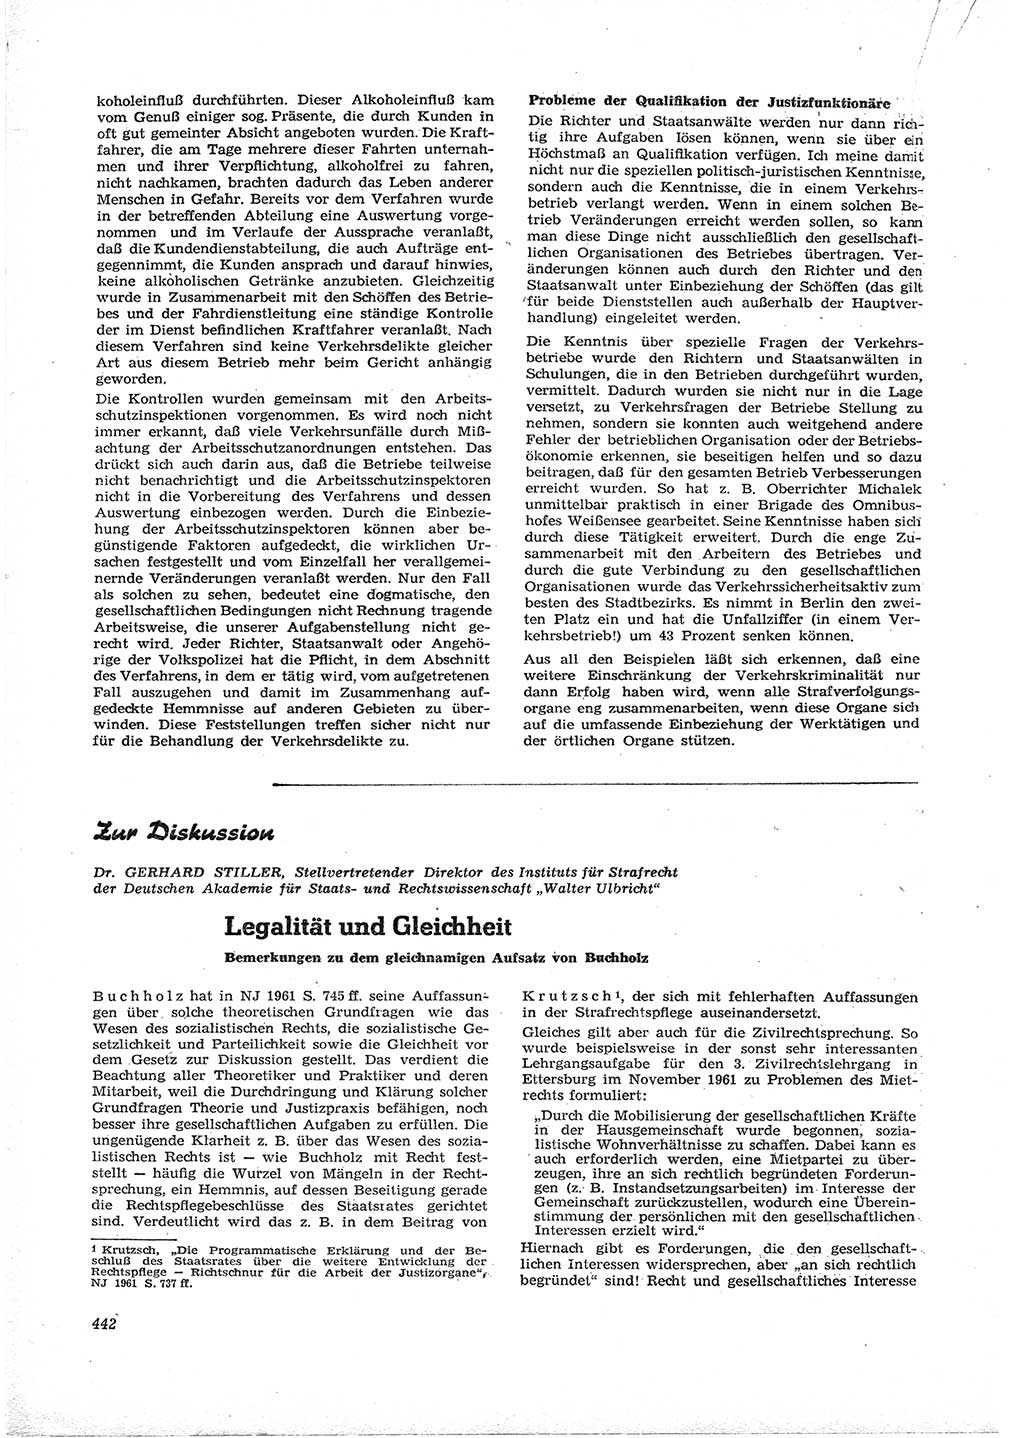 Neue Justiz (NJ), Zeitschrift für Recht und Rechtswissenschaft [Deutsche Demokratische Republik (DDR)], 16. Jahrgang 1962, Seite 442 (NJ DDR 1962, S. 442)